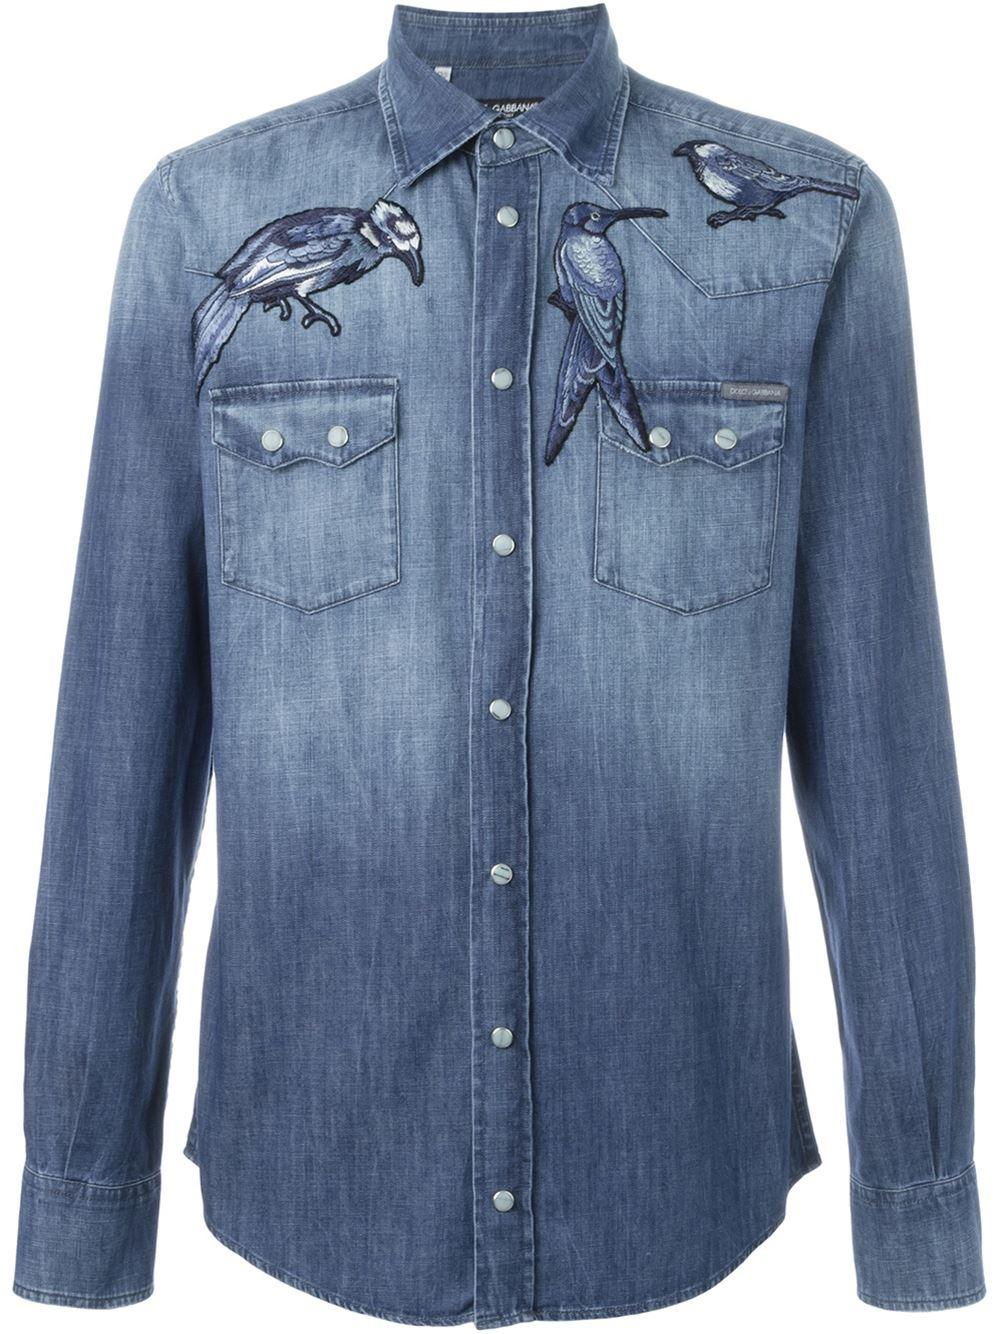 Dolce & Gabbana Bird Embroidered Denim Shirt in Blue for Men - Lyst